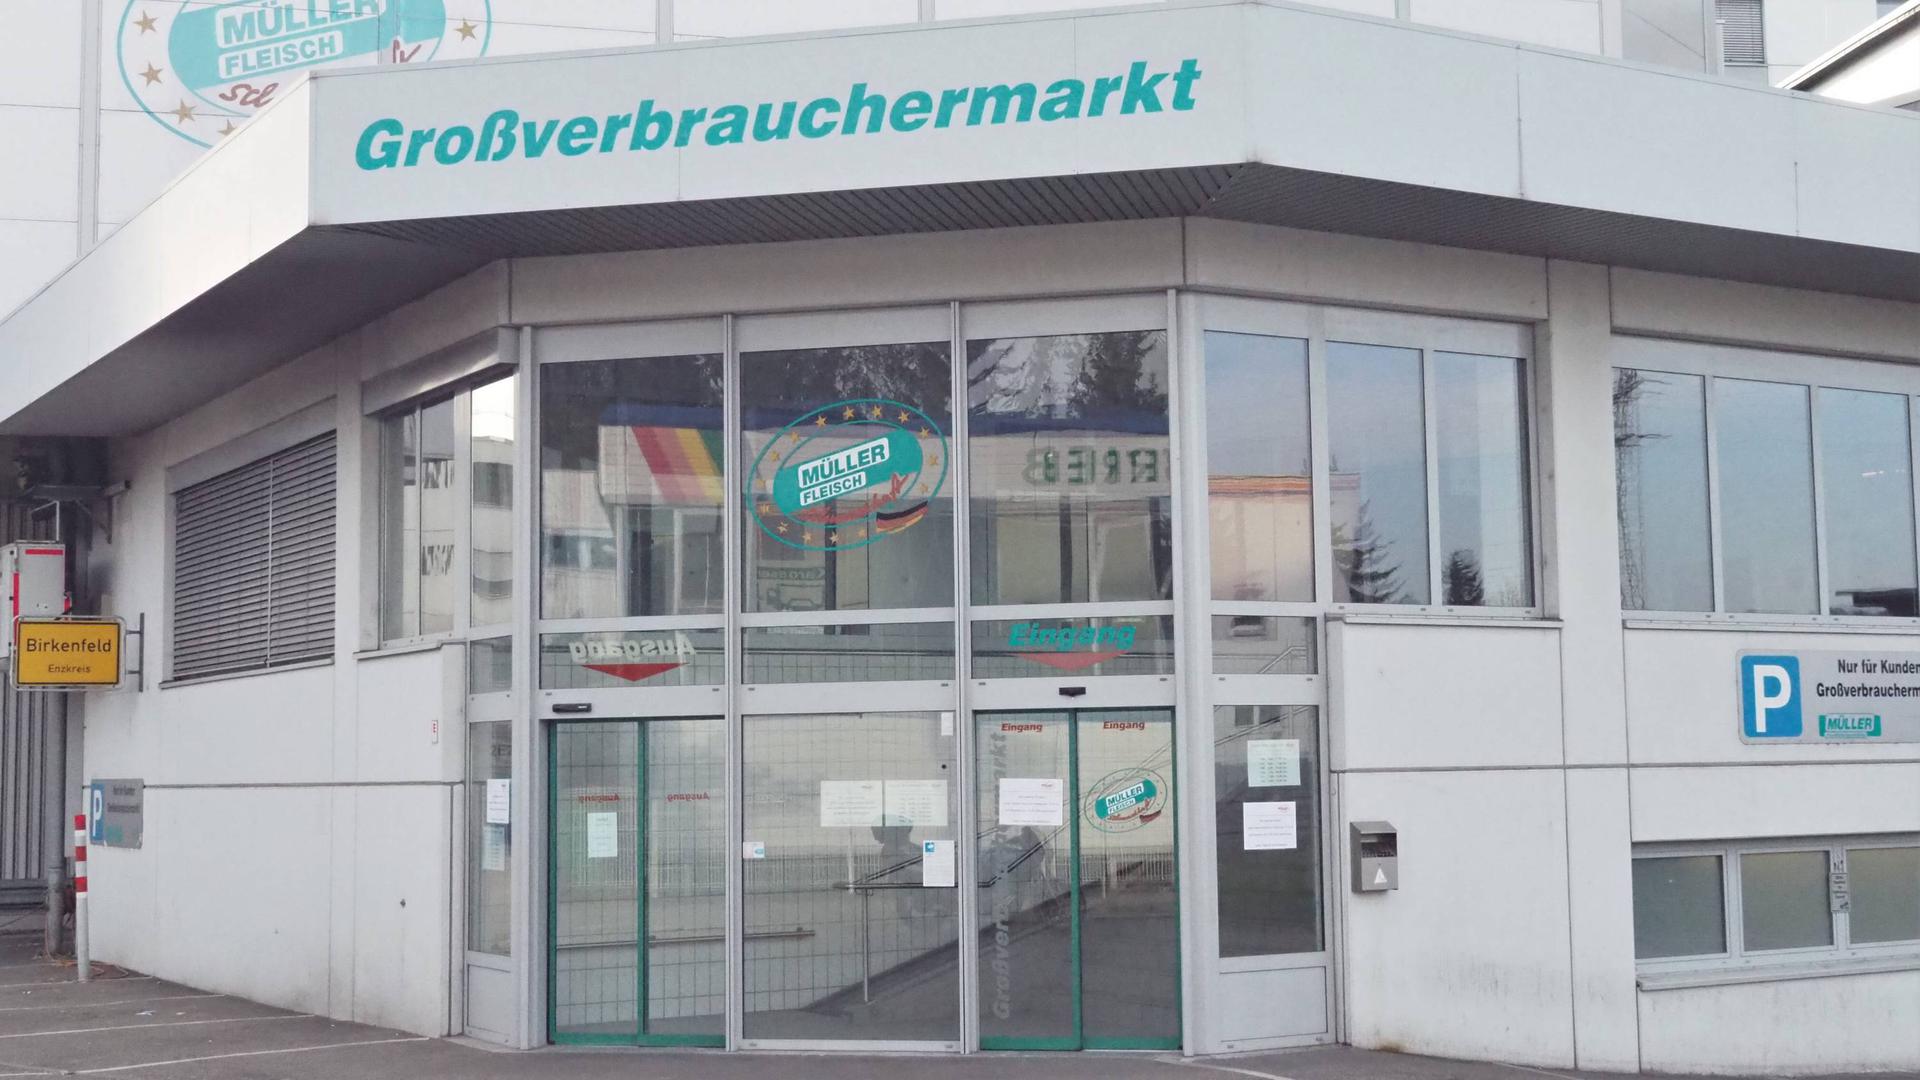 Großverbrauchermarkt von Müller-Fleisch in Birkenfeld.